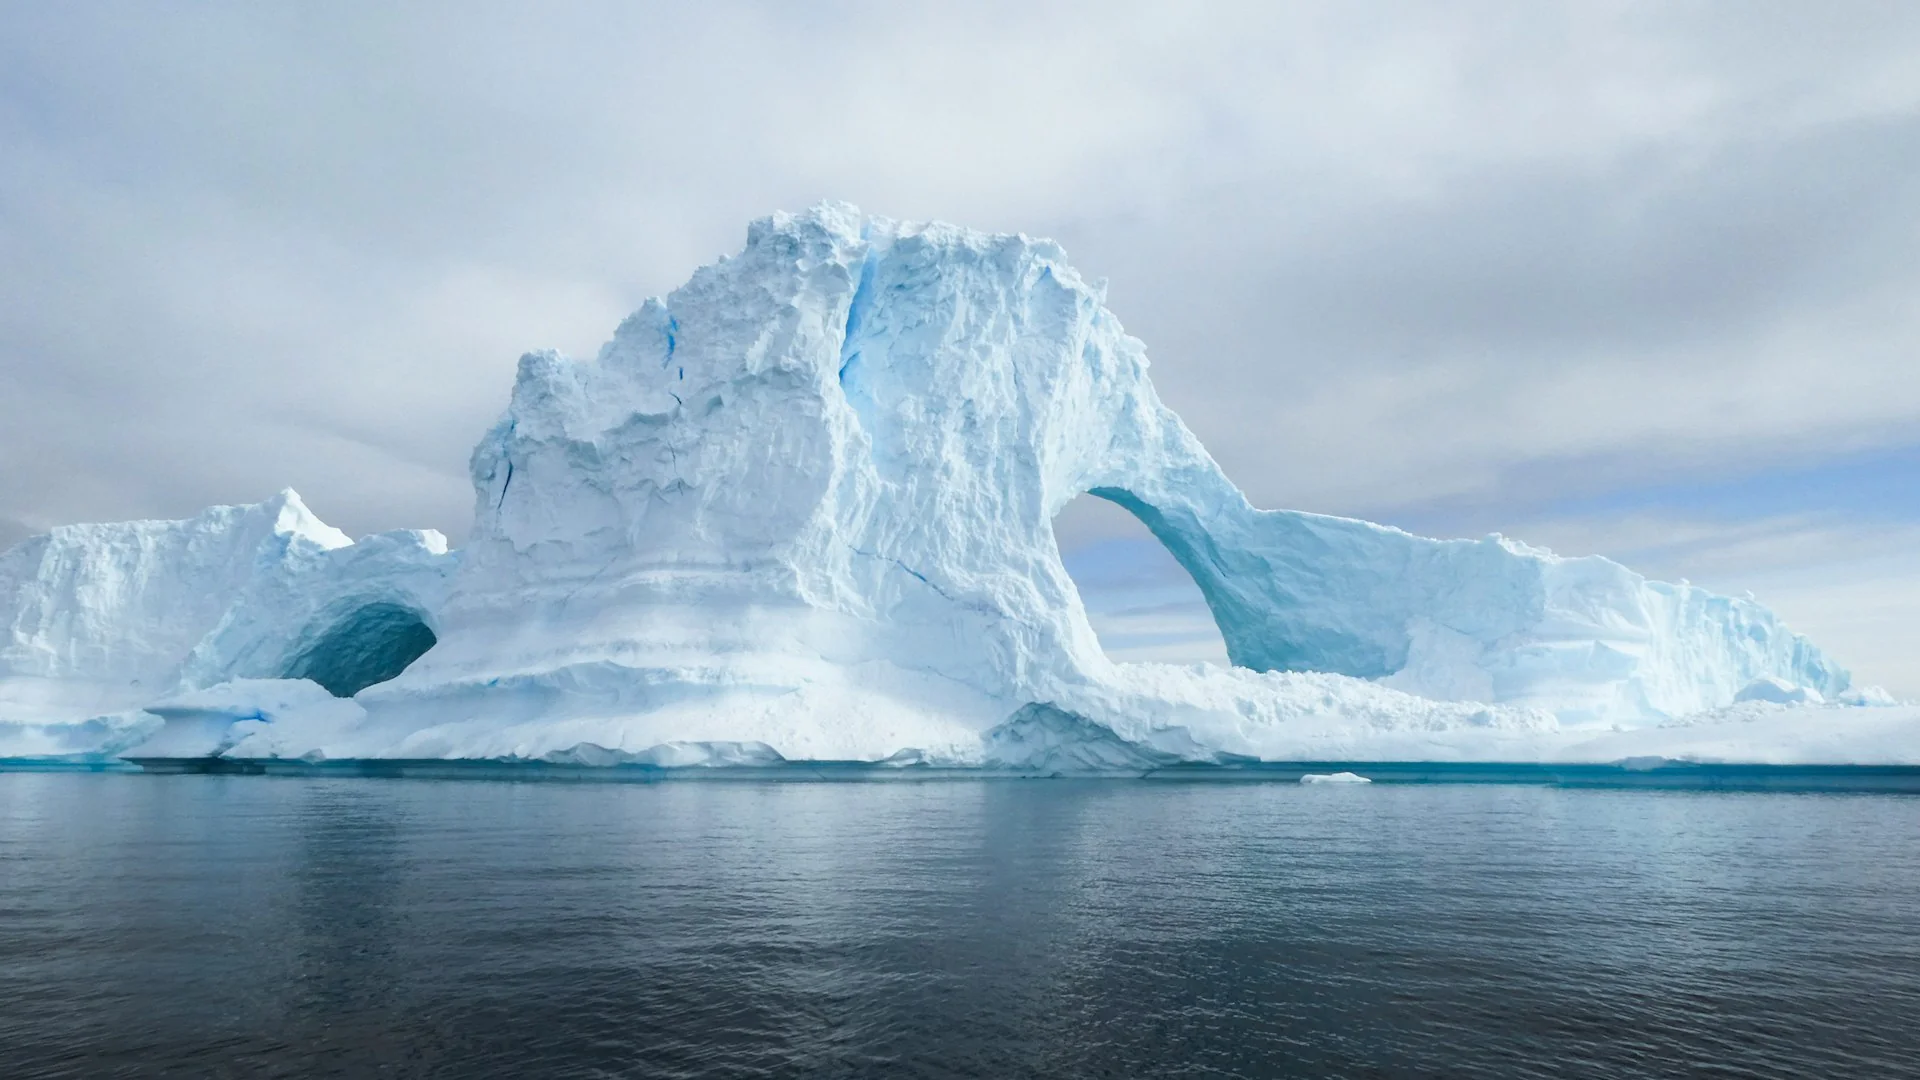 Gelo na Antártica tem recordes negativos há 3 anos seguidos